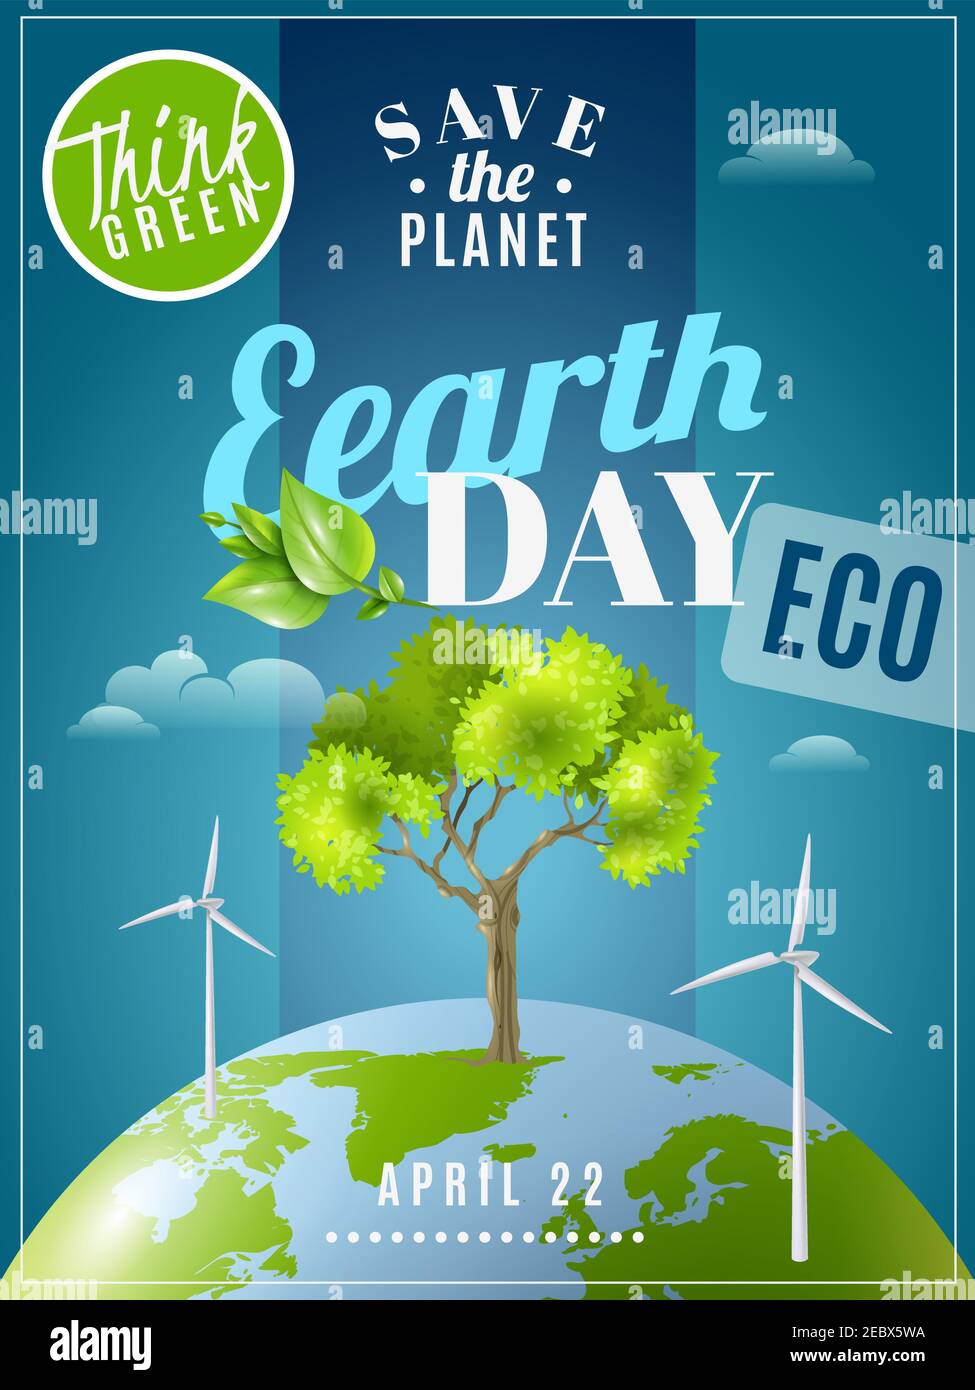 Save Planet Earth Day annonce publicité de sensibilisation à l'environnement affiche écologique avec des sources d'énergie vertes illustration vectorielle colorée Illustration de Vecteur